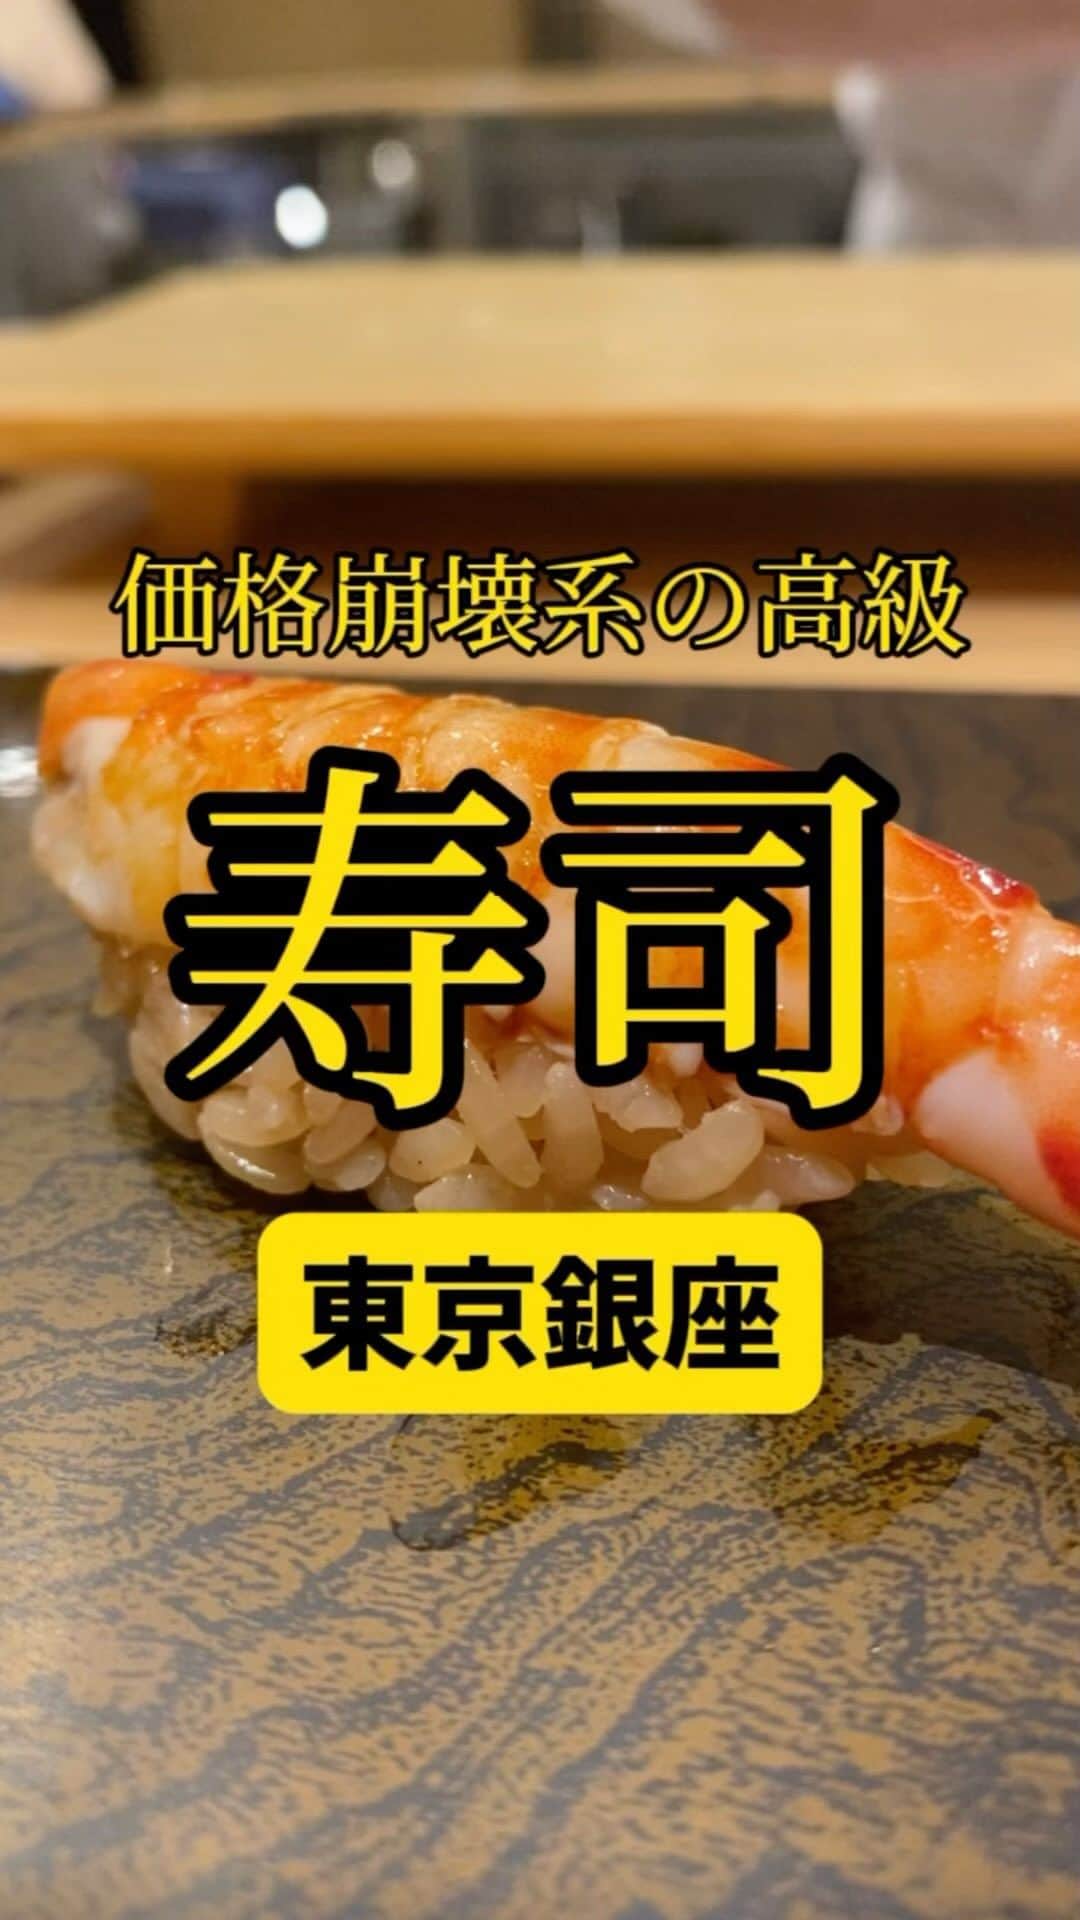 Mr.FISHEYE/魚眼男のインスタグラム：「4万円の寿司が回転寿司価格で食える立ち食い寿司🍣東京/銀座「鮨 銀座おのでら 登龍門」  (美味しいお店など情報をなるべく早めに紹介するので @ryo_onoma をお願いします🙇‍♂️)  回転寿司より美味くて高級寿司より遥かに安い店を人は求めていると思うが、そのゴール、暫定一位がここではないか。良いお店があったら大至急教えて欲しい。1人40,000円を超える超高級寿司の本店と同じ食材、魚、仕込みをしているのに新人が握っているというだけで値段がグッと下がり高めの回転寿司ほどになるのが驚きだ。高級寿司屋が高いという話もあるかもしれないがその佇まいで十分四万円の価値があると思っている。話をこのお店に戻す。とにかく食材も一級品で美味いのに安い、安すぎるという話だ。行って食ったら驚くだろう。そして回転寿司に行くならここという頭になるだろう。立ち食いなので疲れている時はアレだがそれを除けば。新人の寿司職人さんは何とも明るく気さくだ。そしてとても謙虚でポジティブ。話していて元気になる。一生懸命魂を込めて握っているのもわかる。これからの寿司を握る腕の変化を味わうのが1番の醍醐味だろう。  【鮨 銀座おのでら 登龍門】 📍東京都中央区銀座5-14-17 銀座USB 1F 📲03-6281-5138 🈺16:00～22:00(L.O.21:15) 定休日:不定休 🚶‍♂️東銀座駅から46m 🗒️頼んだメニュー：中トロ、生鮑、車海老などの寿司や白子  #銀座グルメ #銀座ディナー #新富町グルメ #東京グルメ #東京寿司 #寿司 #立ち食い寿司 #寿司大好き #寿司好きな人と繋がりたい #お寿司 #お寿司屋さん #寿司屋 #寿司職人 #和食 #中トロ #ウニ #海老 #グルメ好きな人と繋がりたい」